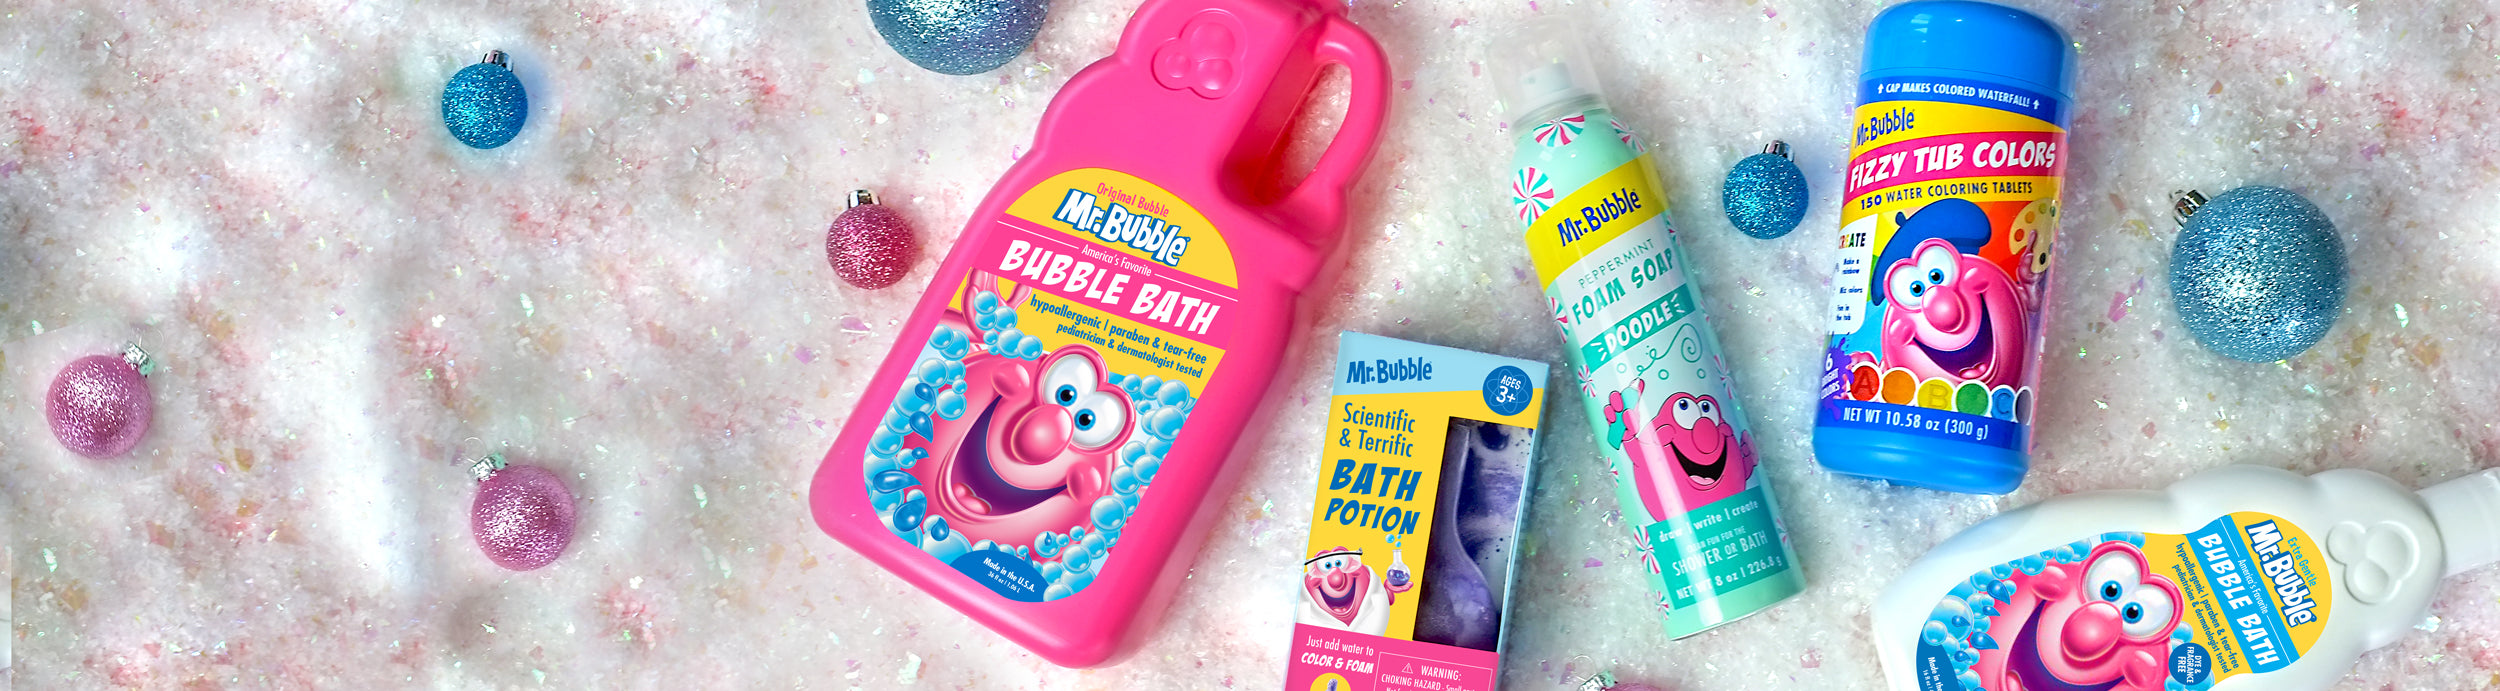 Mr. Bubble - Fluffy Limited Edition Foam Soap – The Village Company